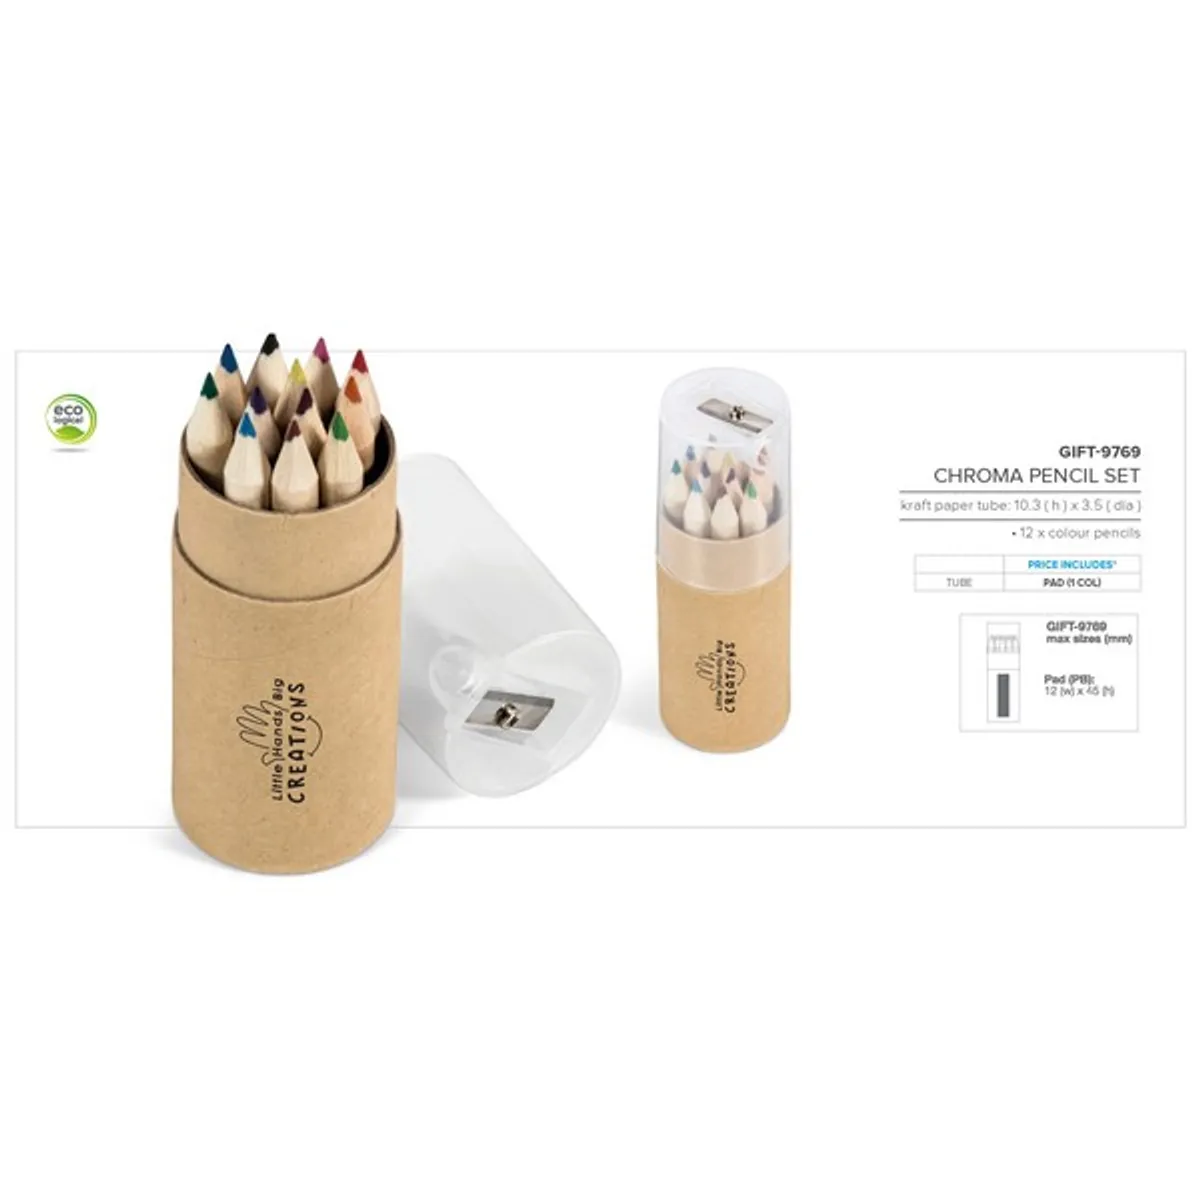 Pen And Pencil Sets